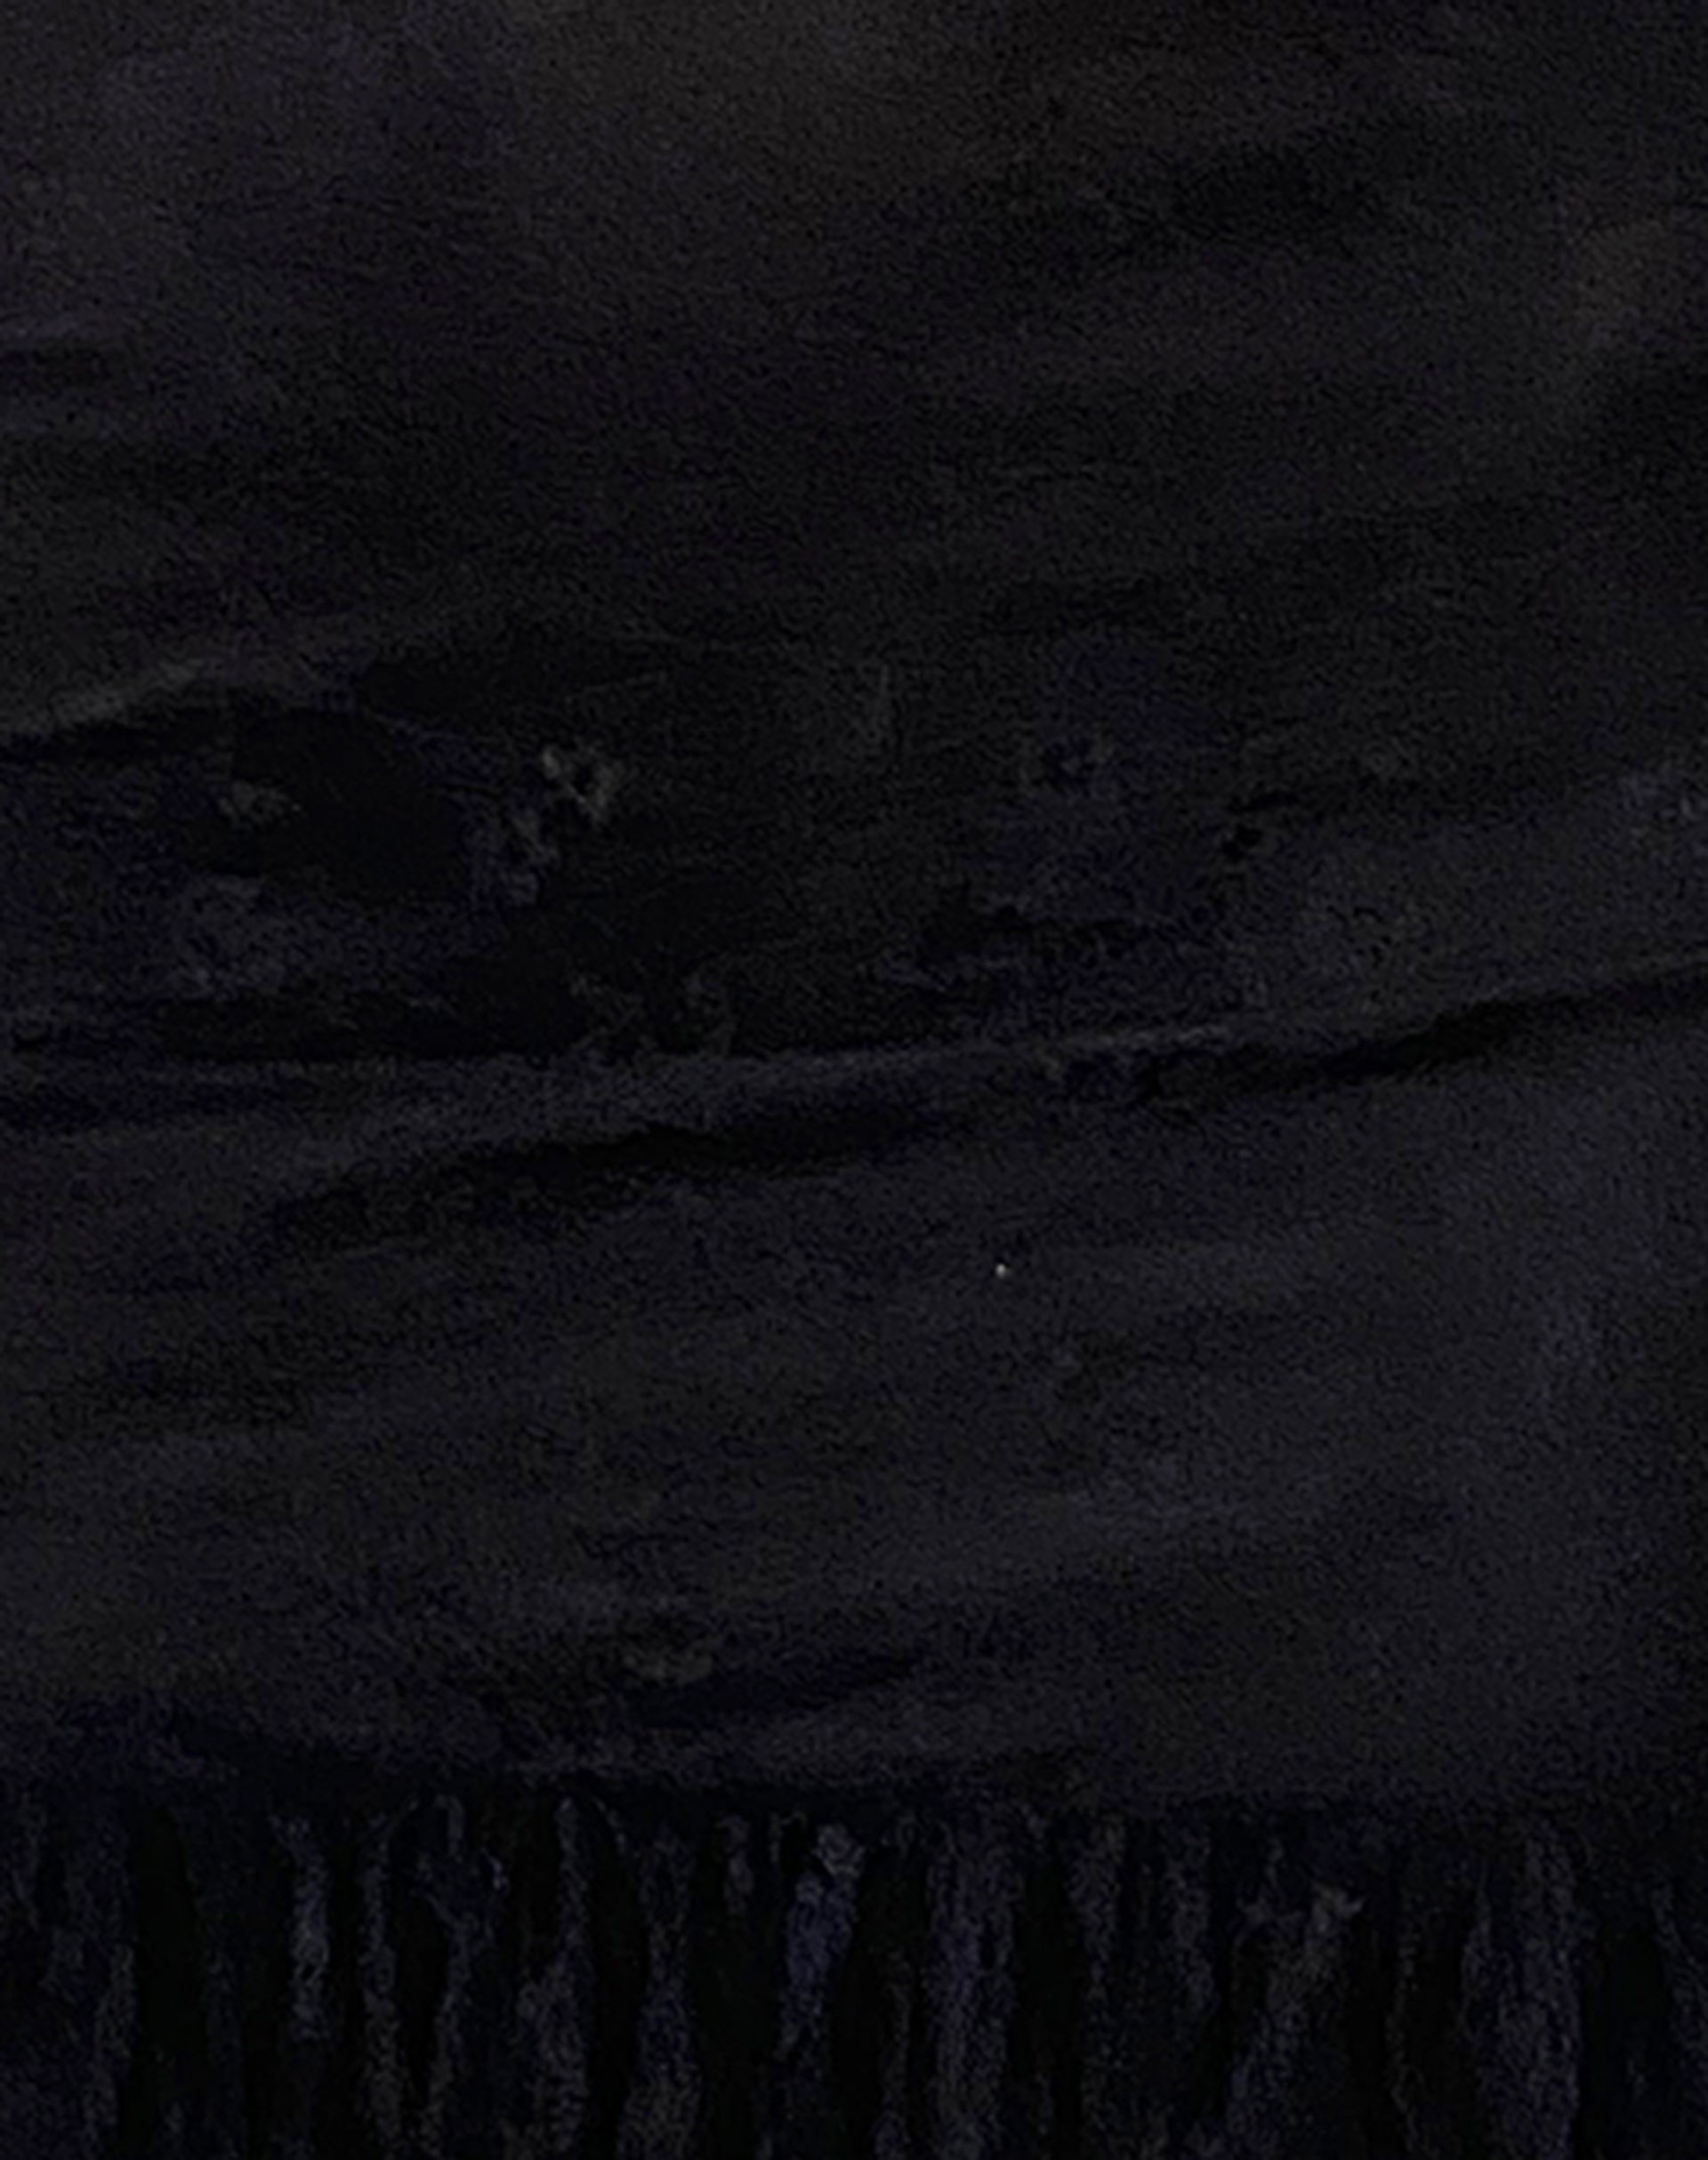 Black Lace Mini Dress  Elaine – motelrocks-com-us